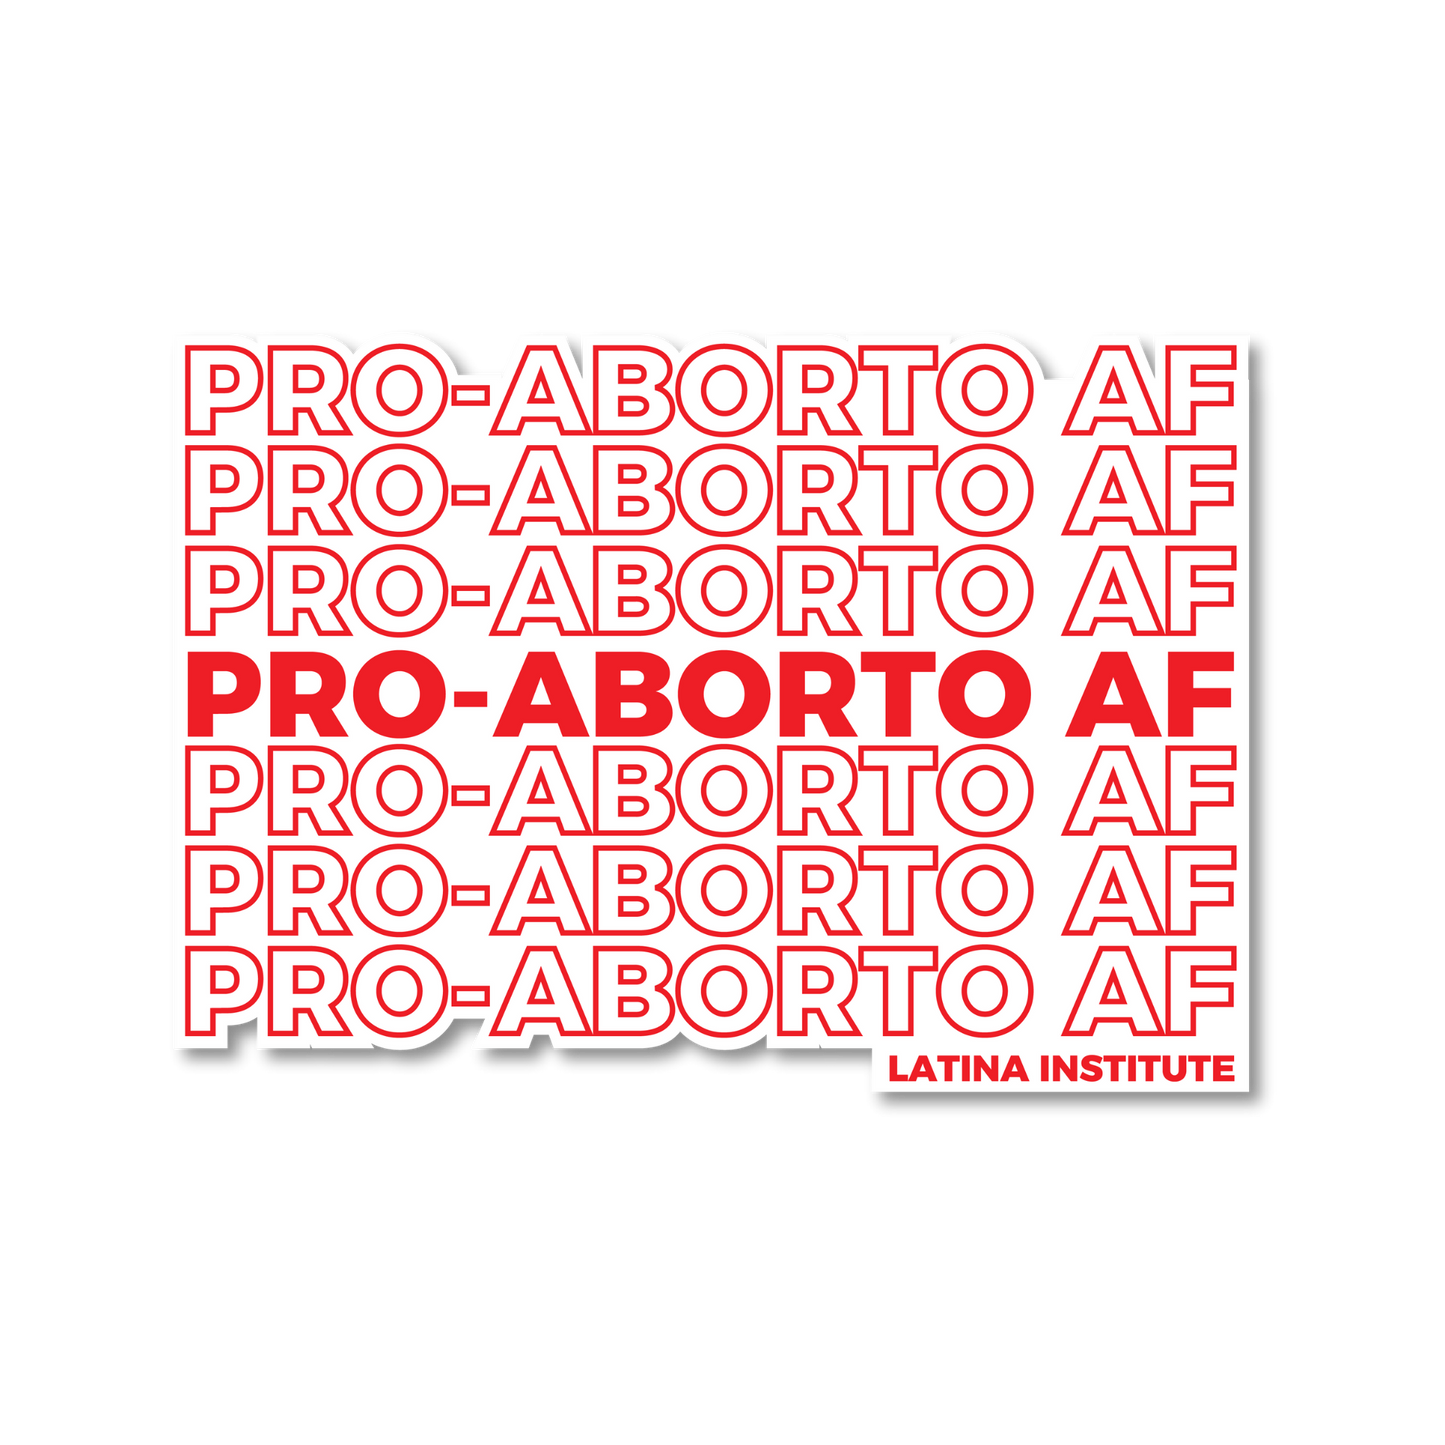 Pro-Aborto AF Sticker